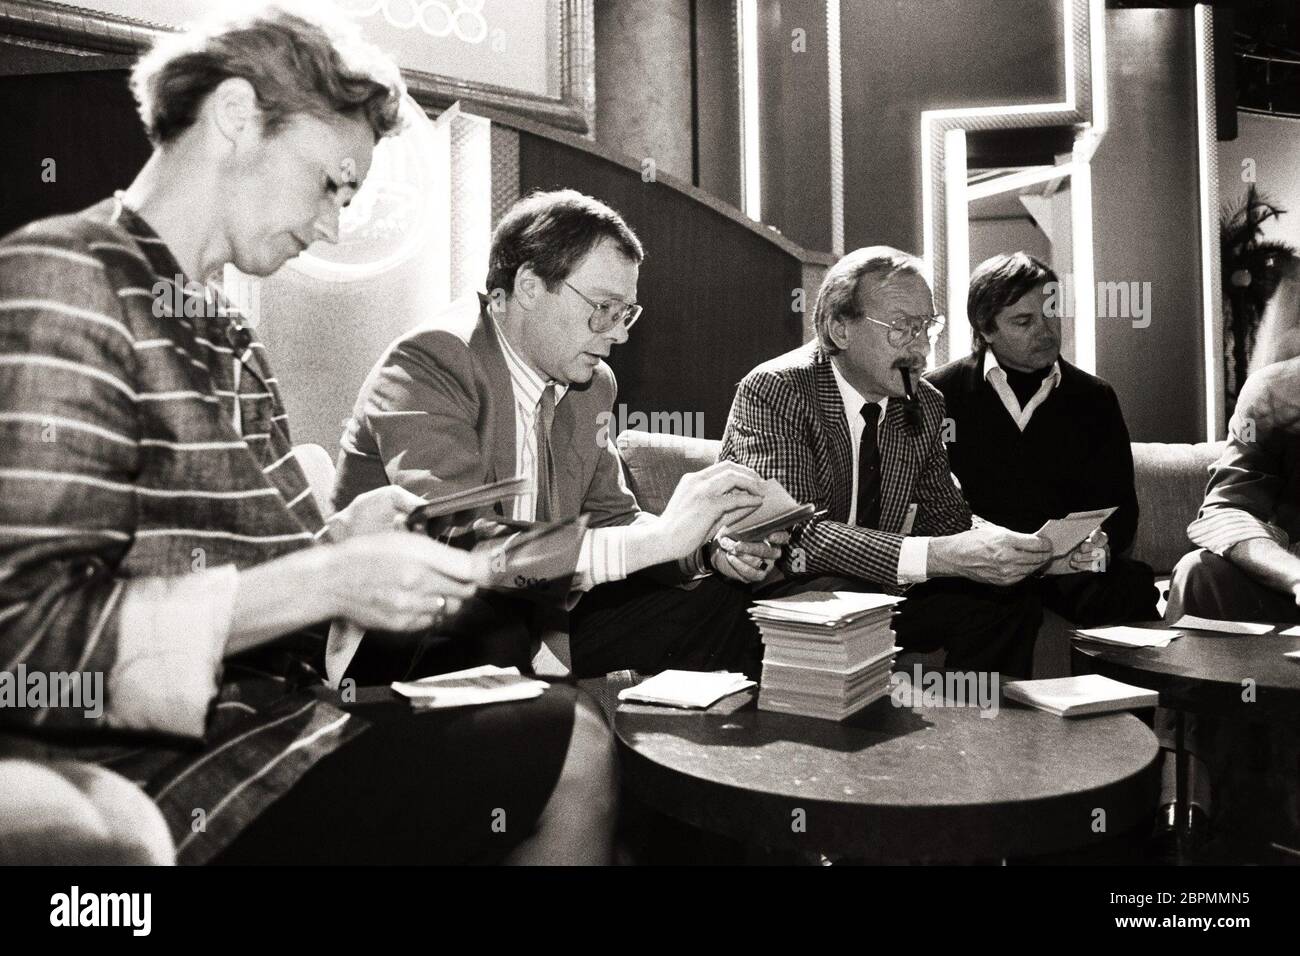 Berlin - 02.04.88 / Die 46. AusGabe von 'Wetten, dass...?' - Auf dem Bild sind die Gäste beim Sichten der Saal-Wette in der 46. Ausgabe von 'Wetten, dass...?' in den 80ern zu sehen. Banque D'Images